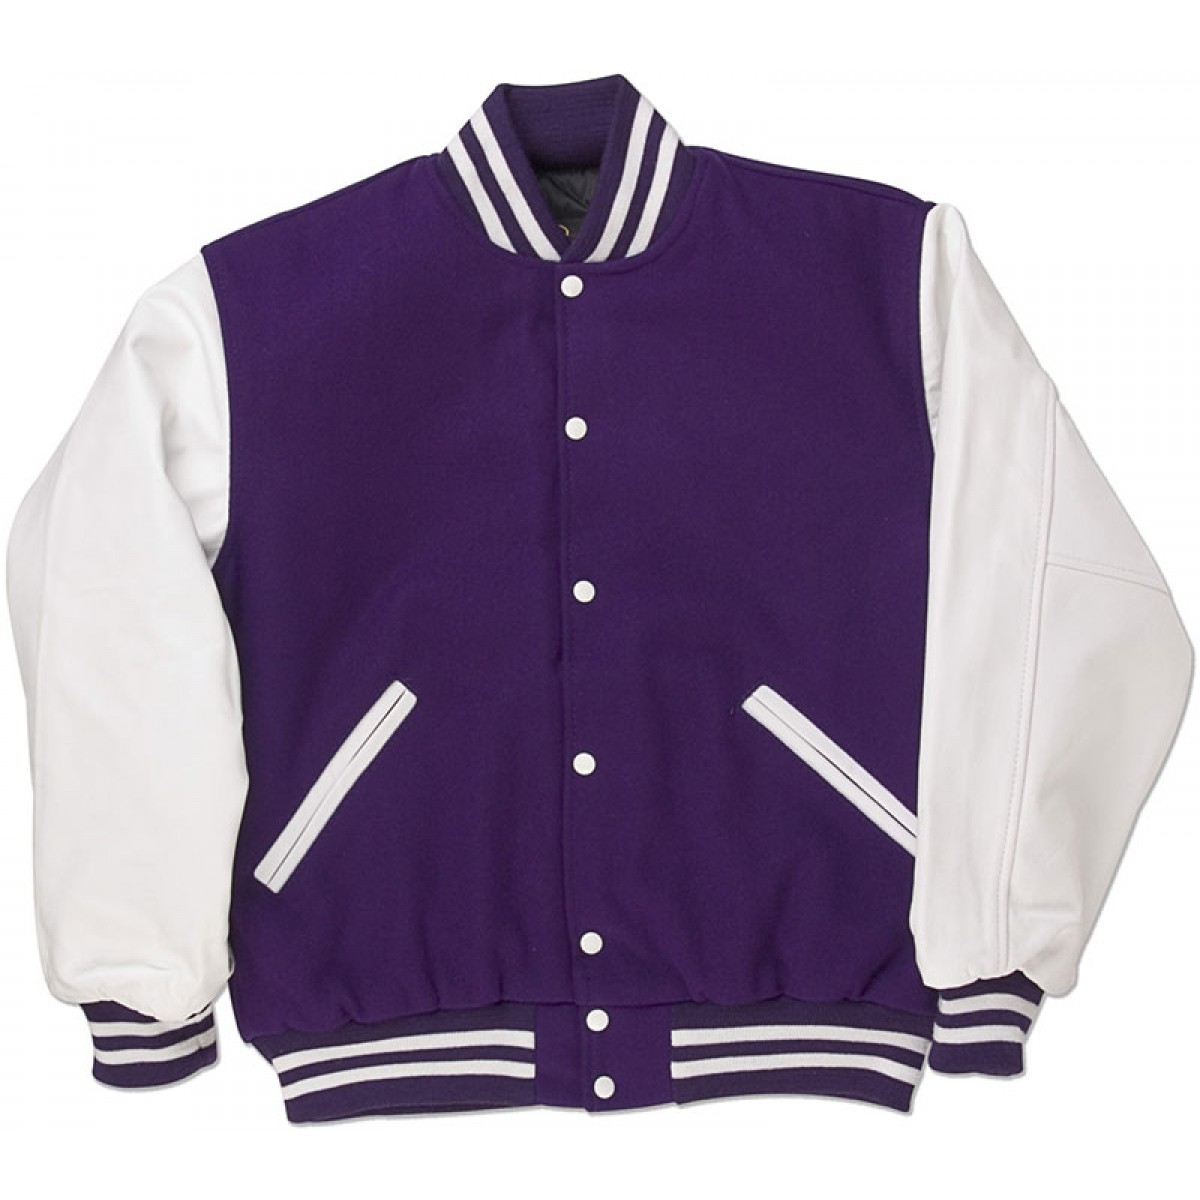 Purple & White Standard Letterman Jacket - Standard Jackets - Letterman ...